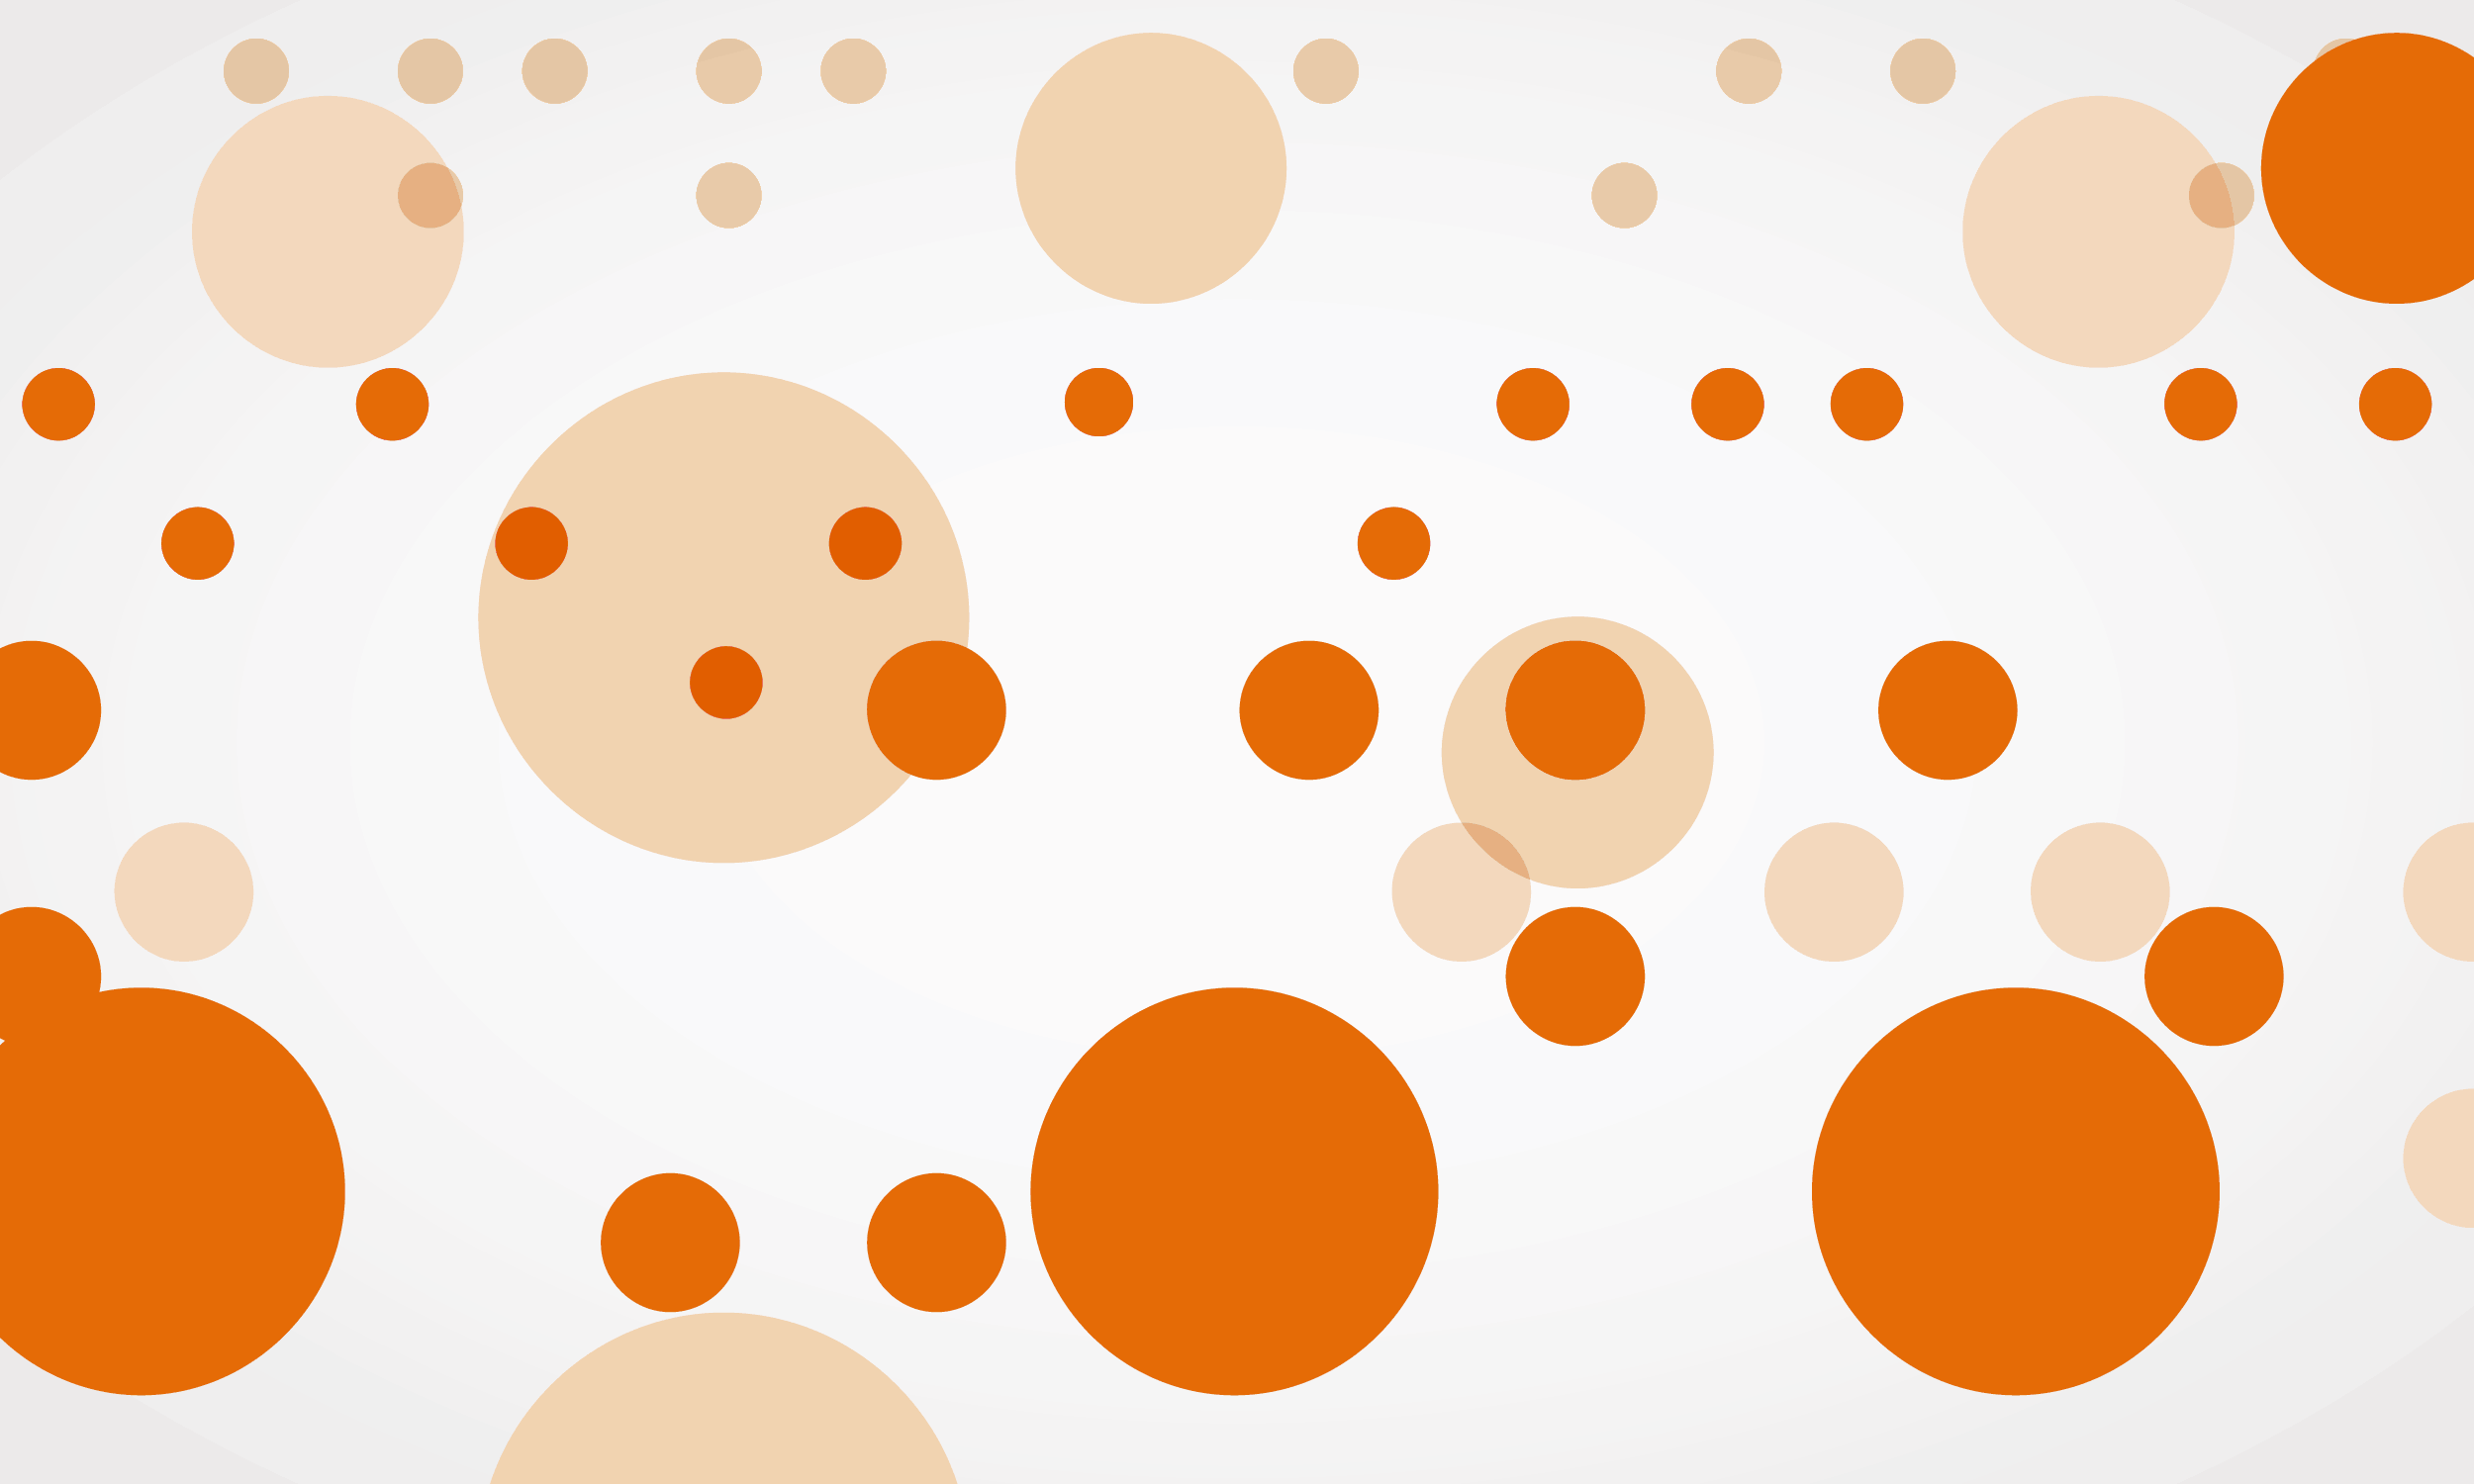 Abbildung von orangenen stilisierten Braillepunkten als Gestaltungselement